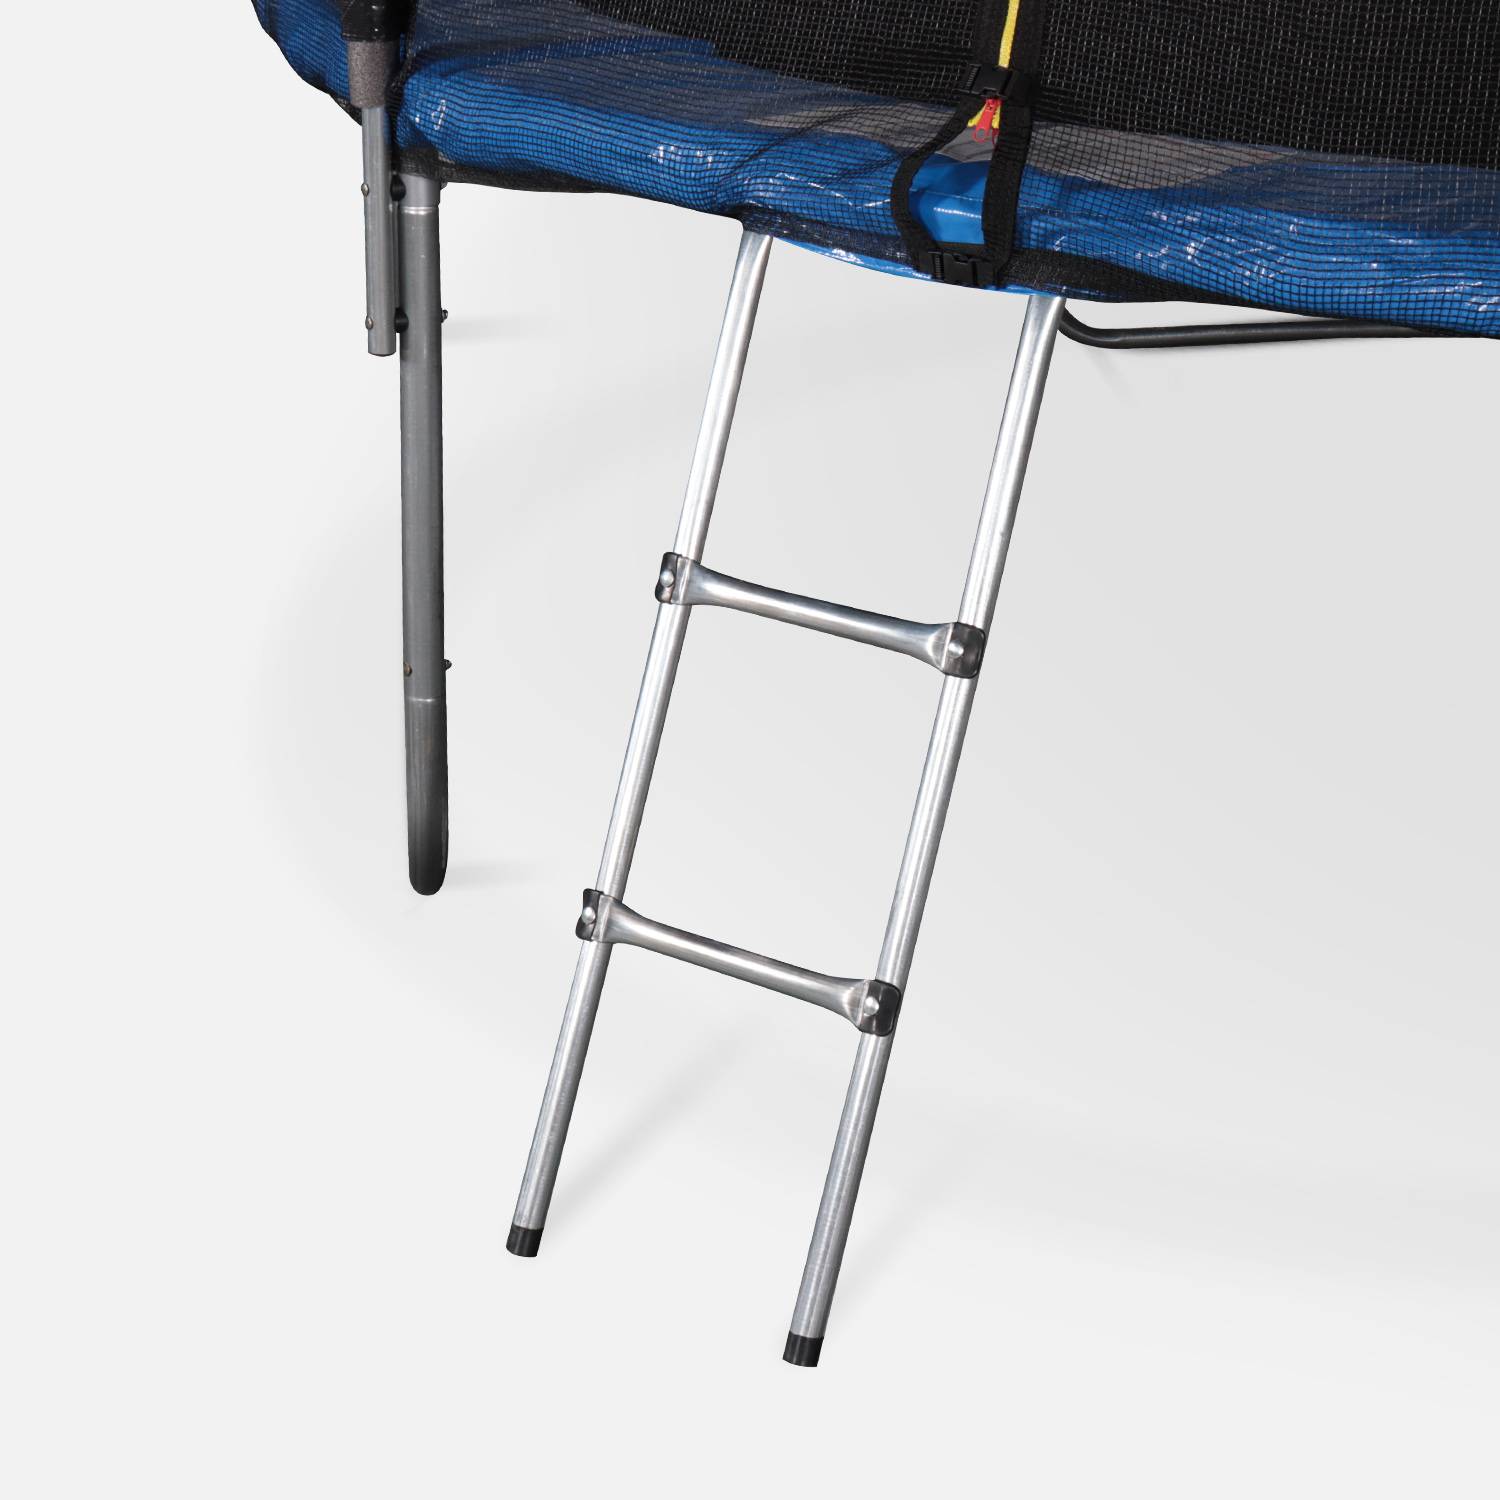 Cama elástica Azul, Trampolín de 245 cm, aguanta hasta 100 kg (estructura reforzada). Incluye: escalera + funda protectora + bolsilla para zapatos + kit de anclaje - Pluton XXL Photo6